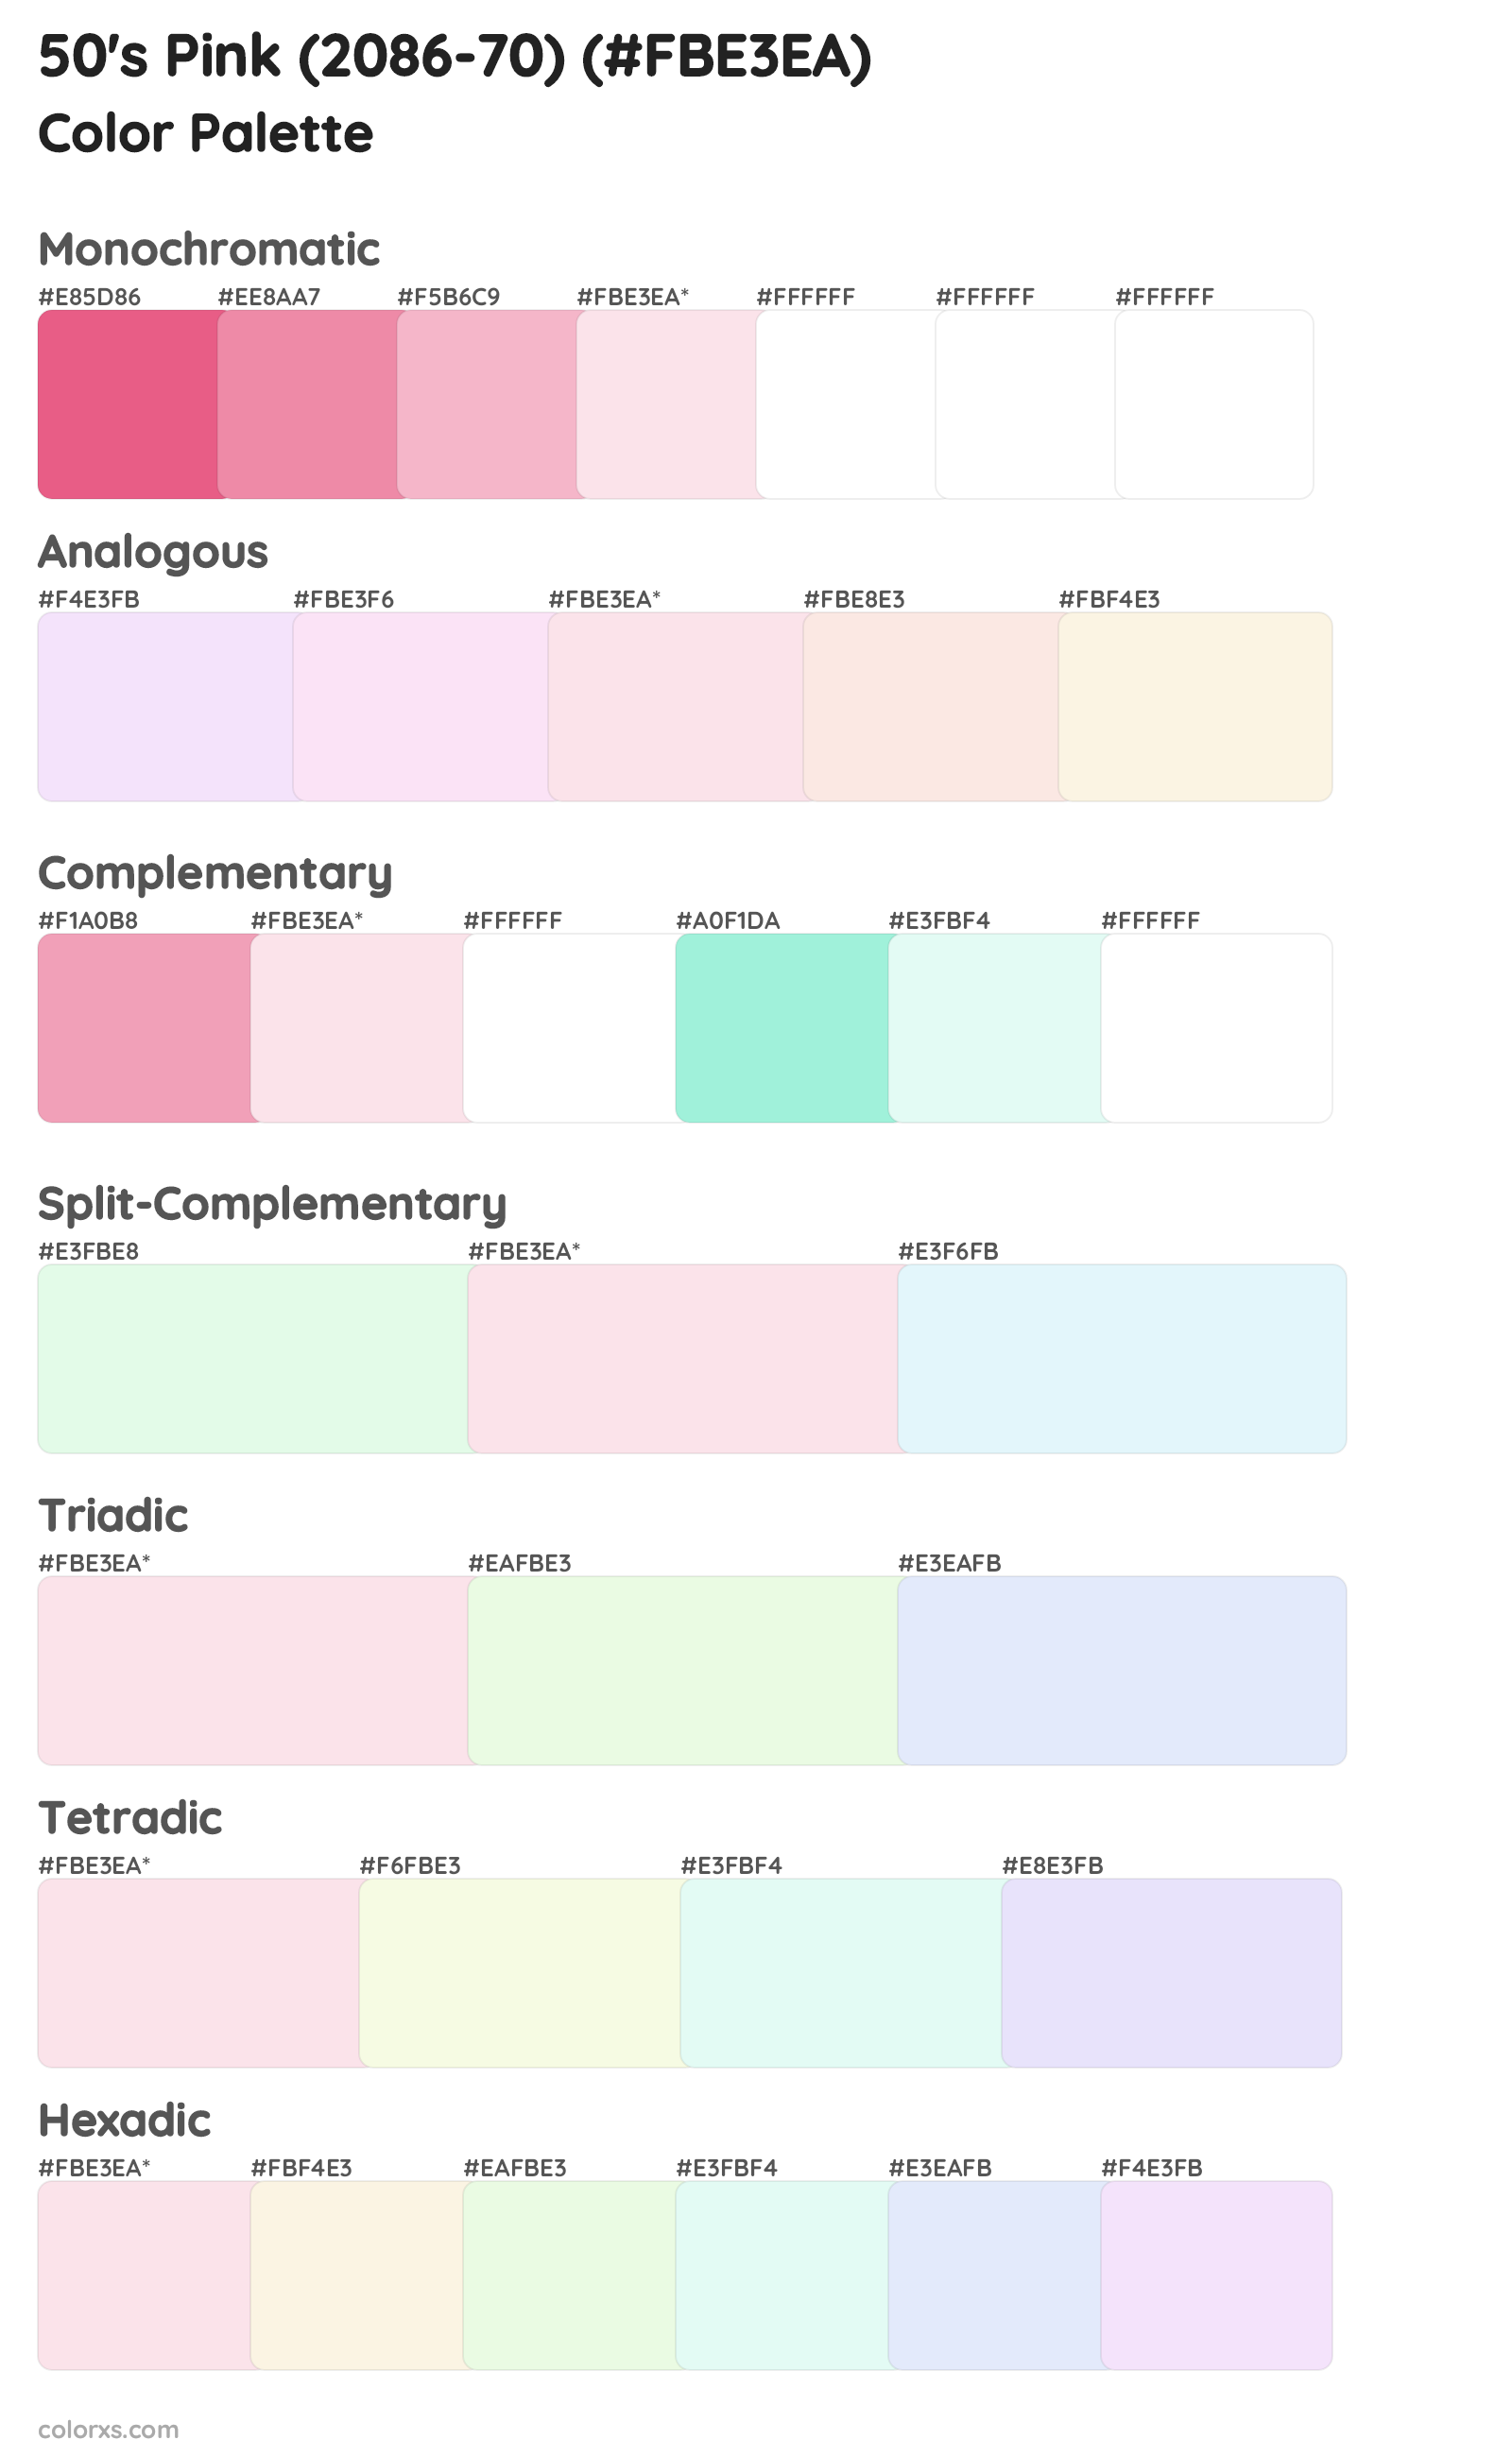 50's Pink (2086-70) Color Scheme Palettes